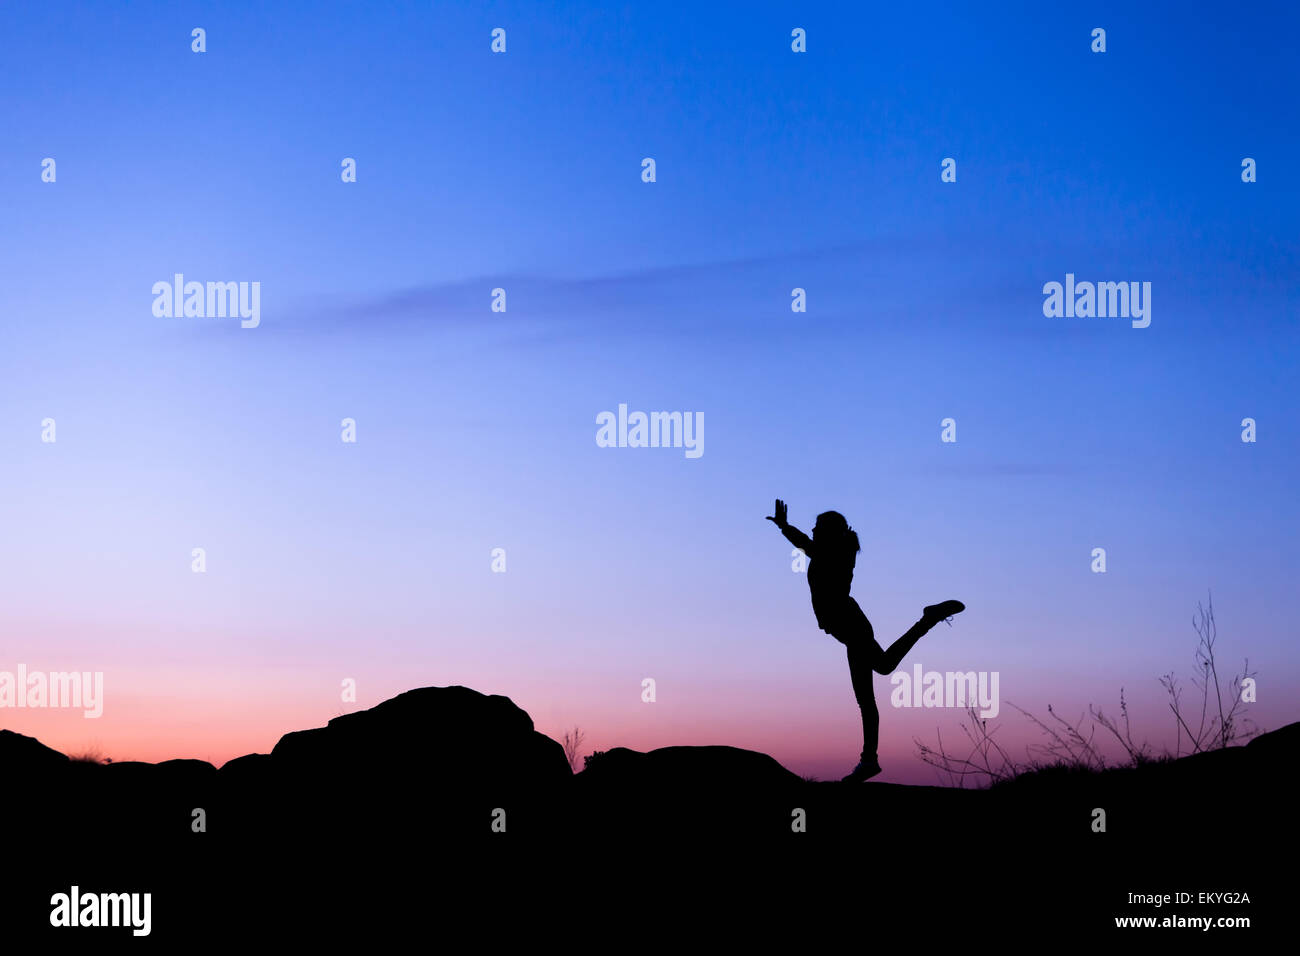 Silhouette der glückliche junge Frau mit gegen schönen bunten Himmel erhobenen Armen. Sommer Sonnenuntergang. Landschaft Stockfoto